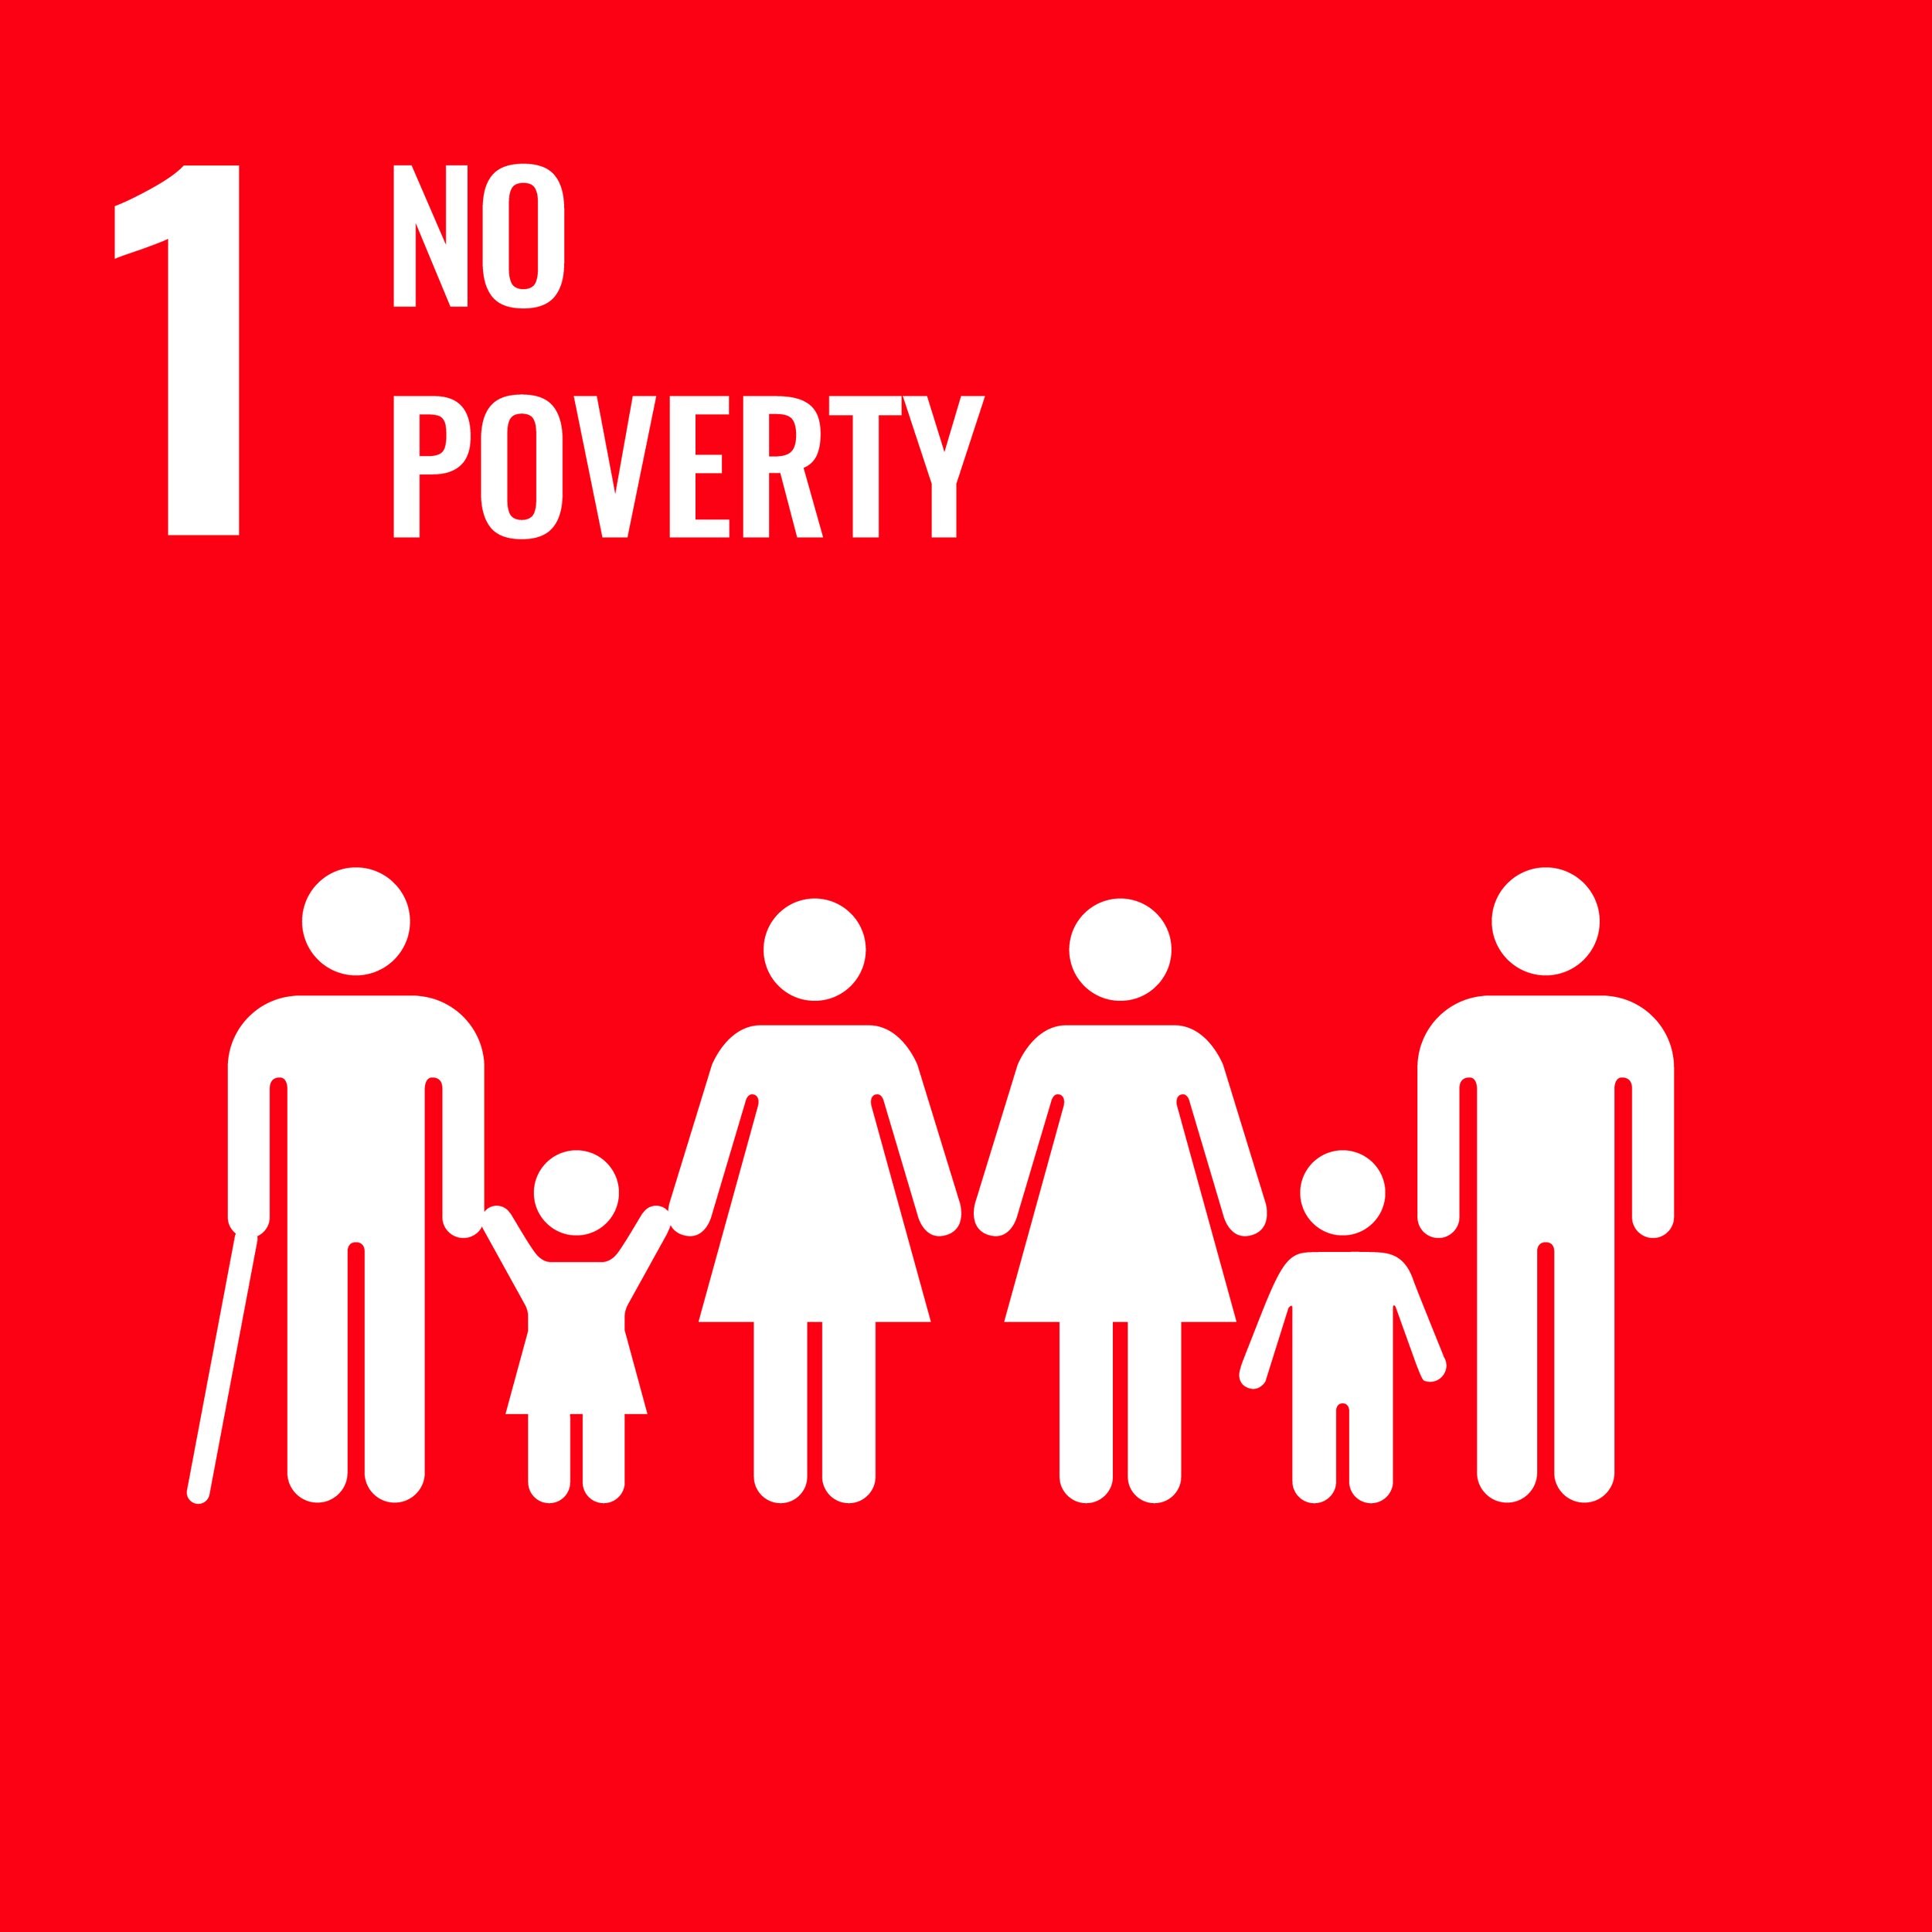 SDG #1